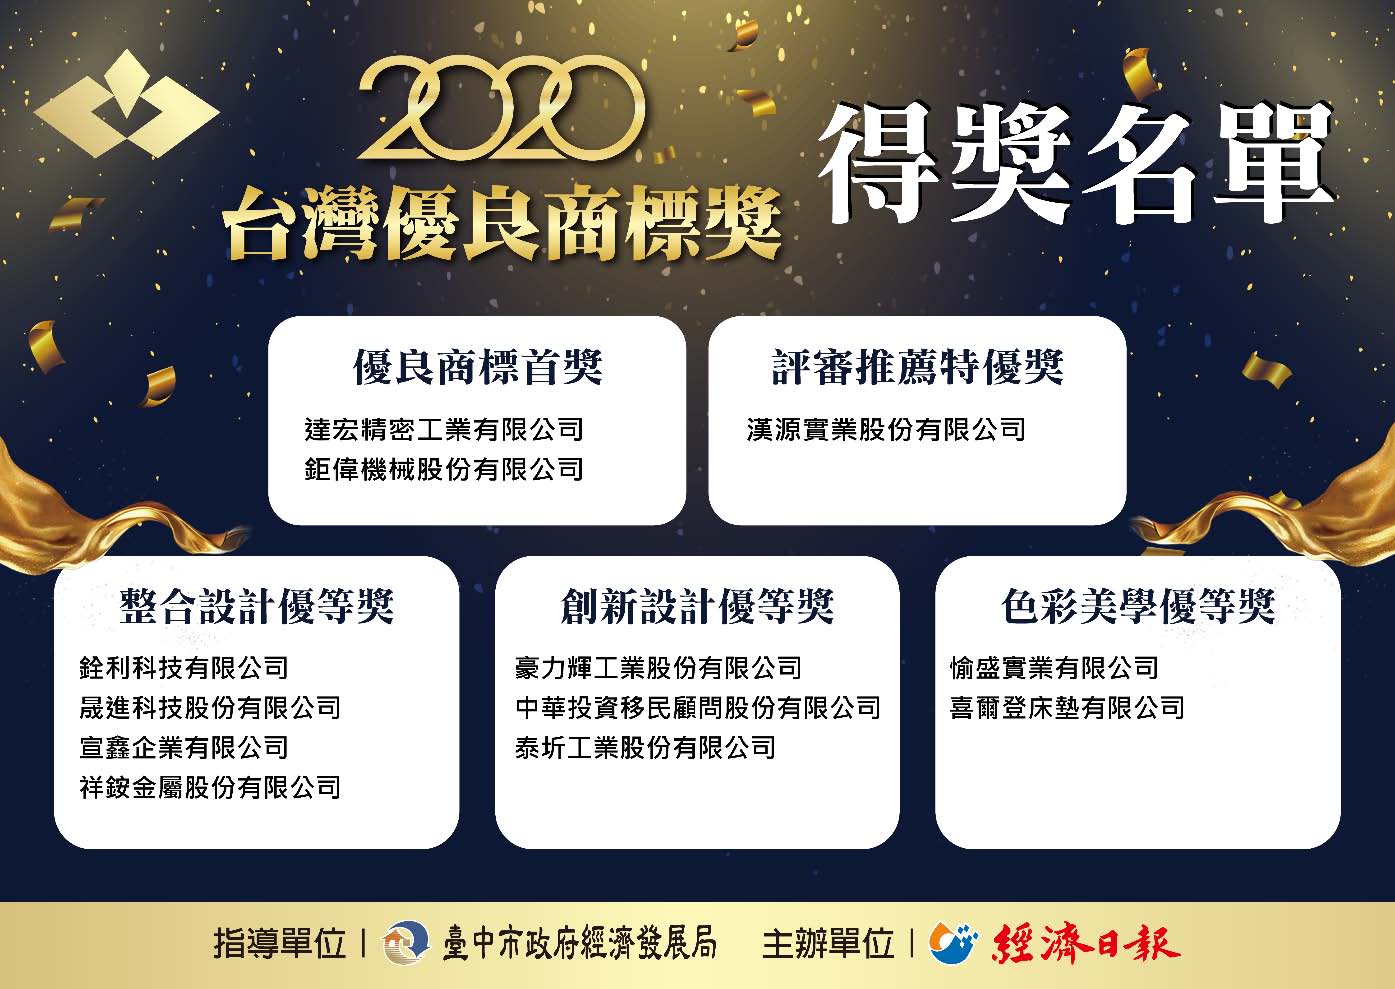 2020 台灣優良商標獎 得獎名單